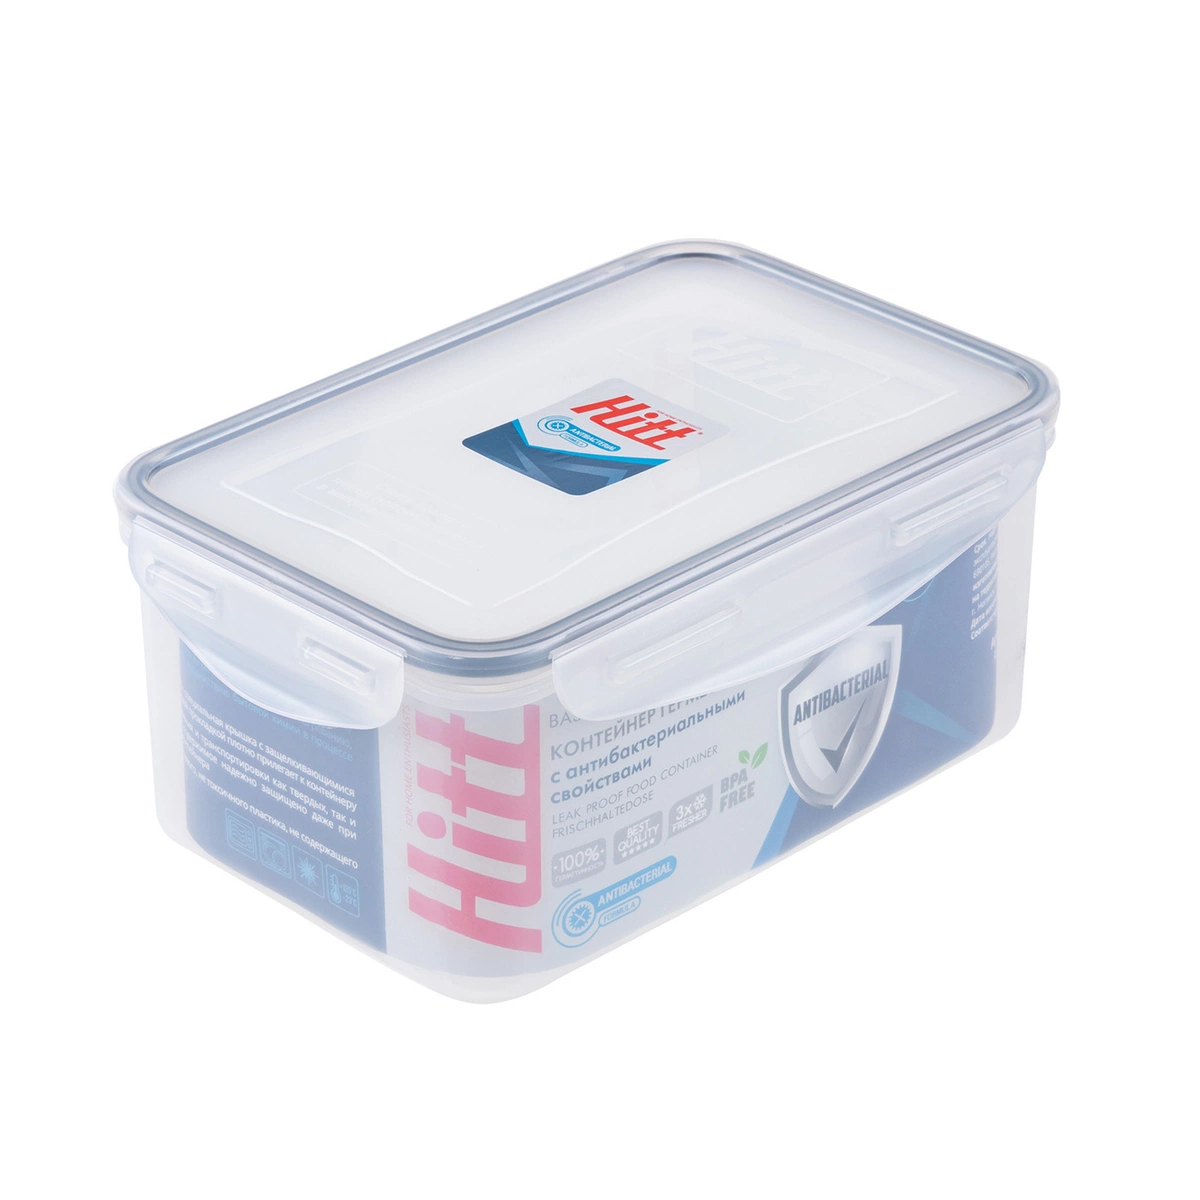 Контейнер герметичный антибактериальный Hitt 1,5 л контейнер под пакеты для уборки за собаками 7 х 4 см синий